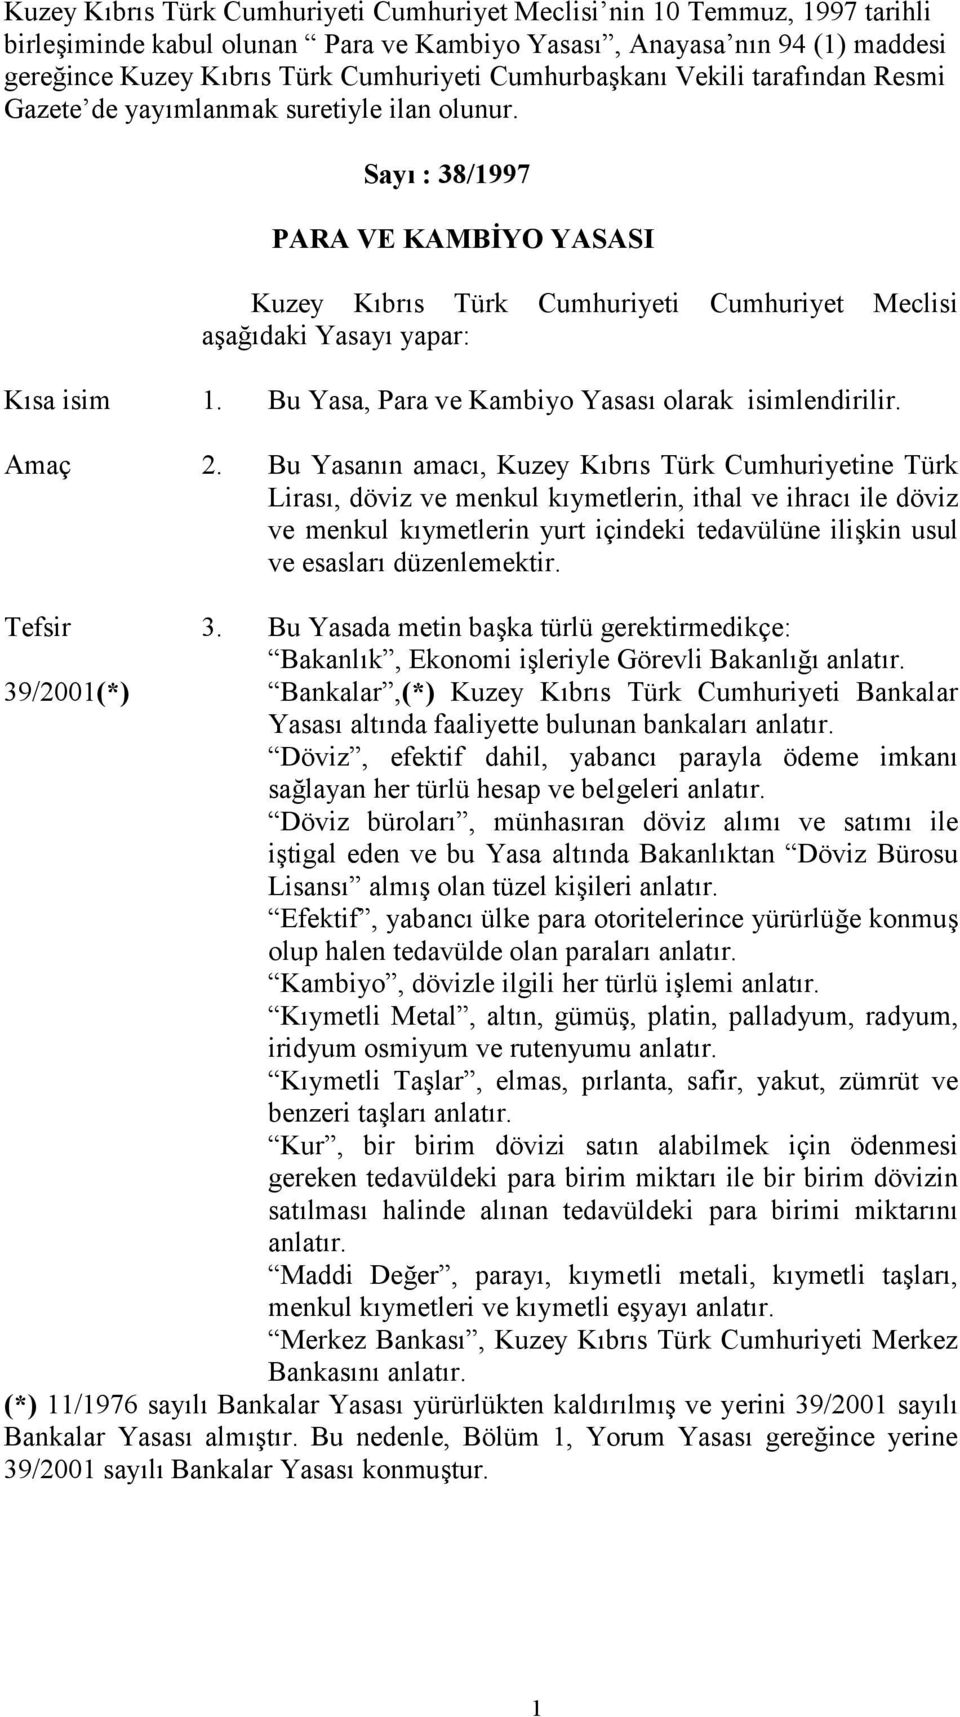 Sayı : 38/1997 PARA VE KAMBİYO YASASI Kuzey Kıbrıs Türk Cumhuriyeti Cumhuriyet Meclisi aşağıdaki Yasayı yapar: Kısa isim 1. Bu Yasa, Para ve Kambiyo Yasası olarak isimlendirilir. Amaç 2.